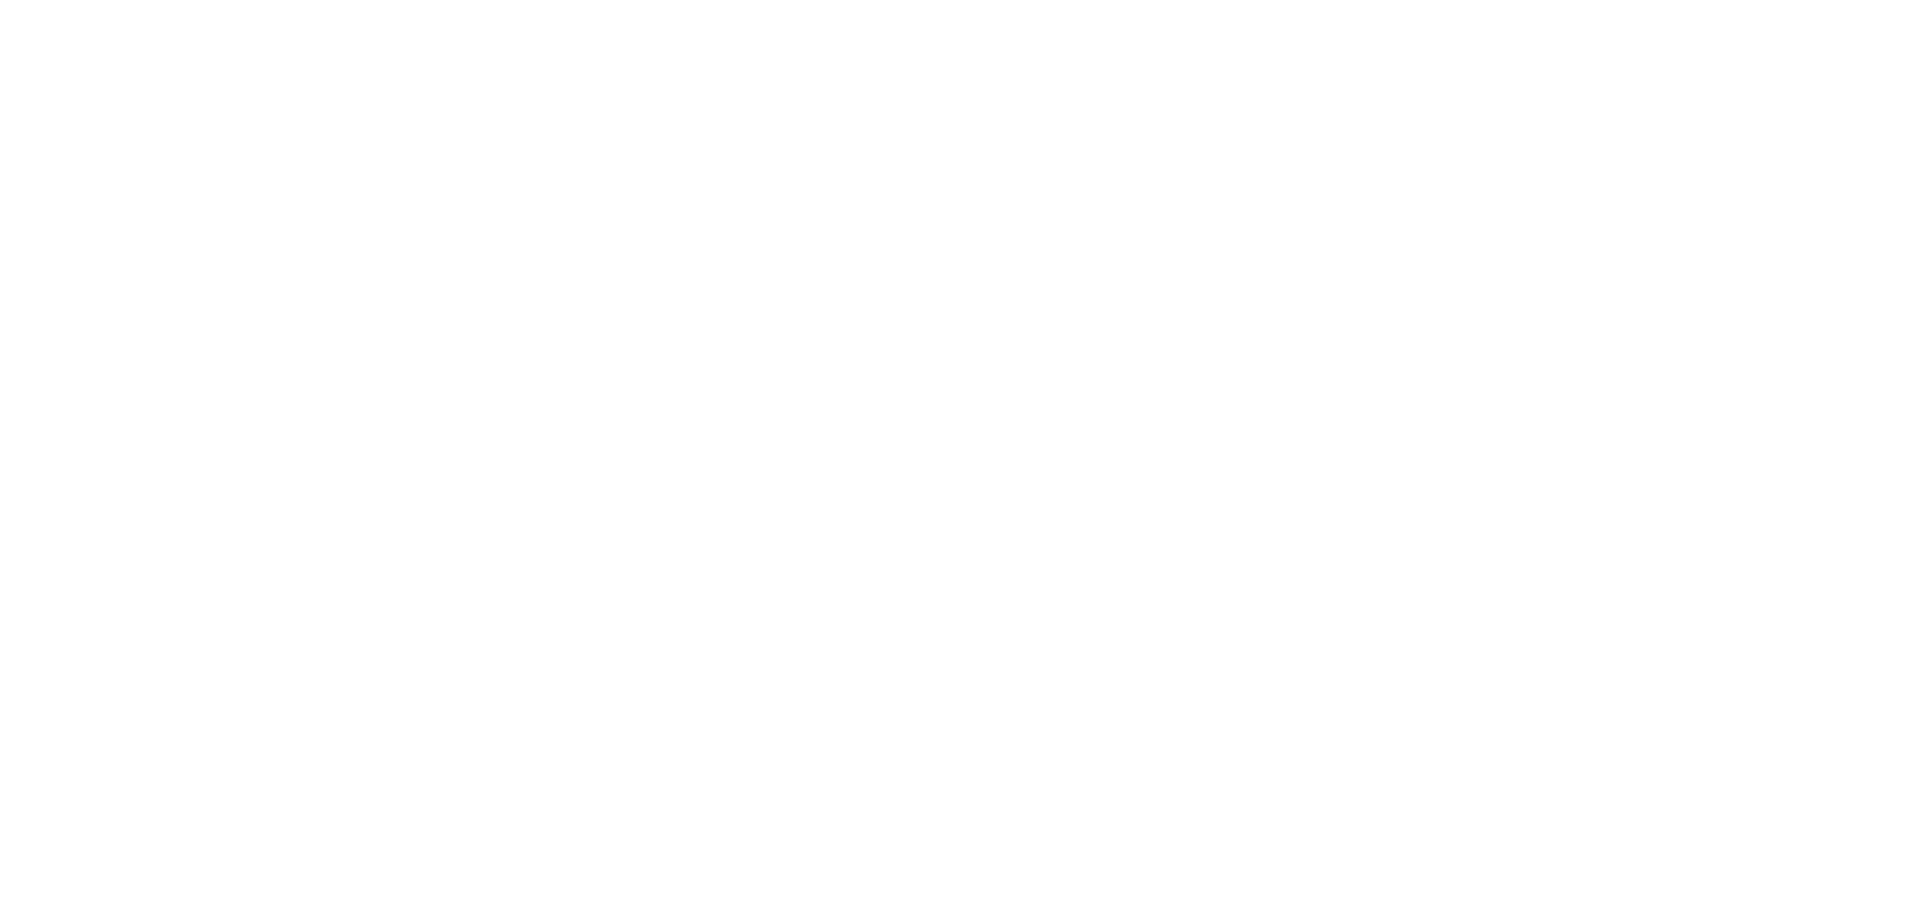 Réseau d'action en santé cardiovasculaire - RASC